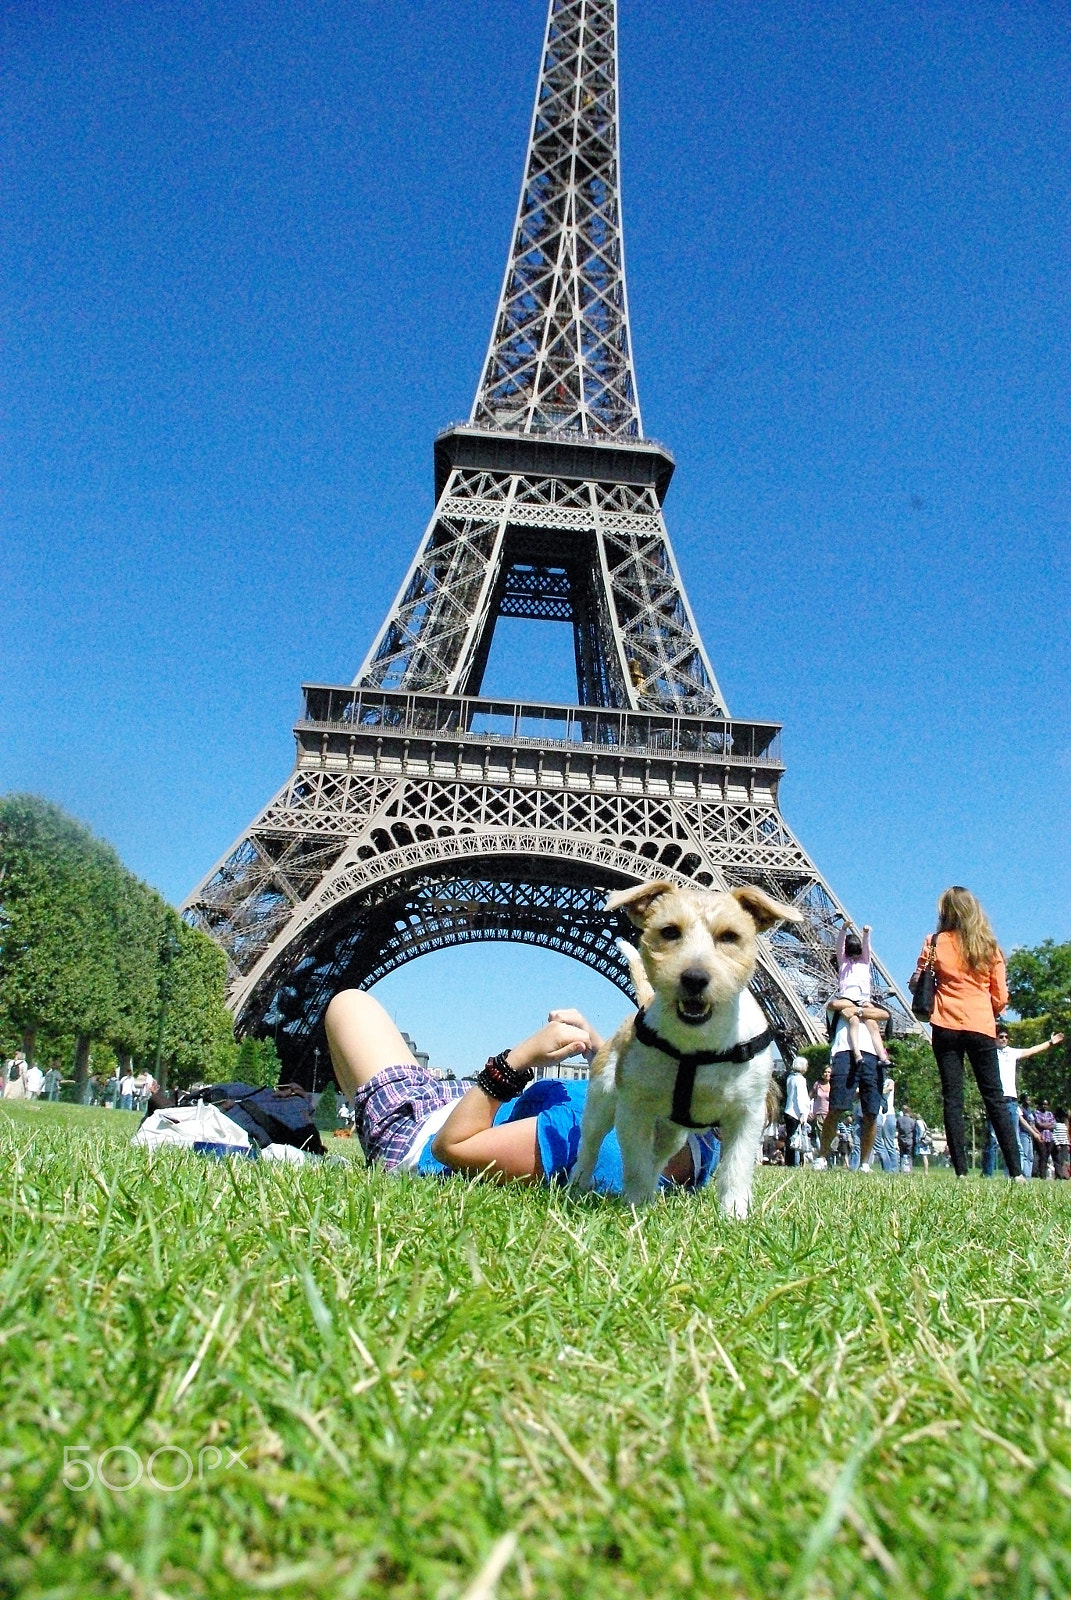 Pentax K-m (K2000) sample photo. Dog in paris photography